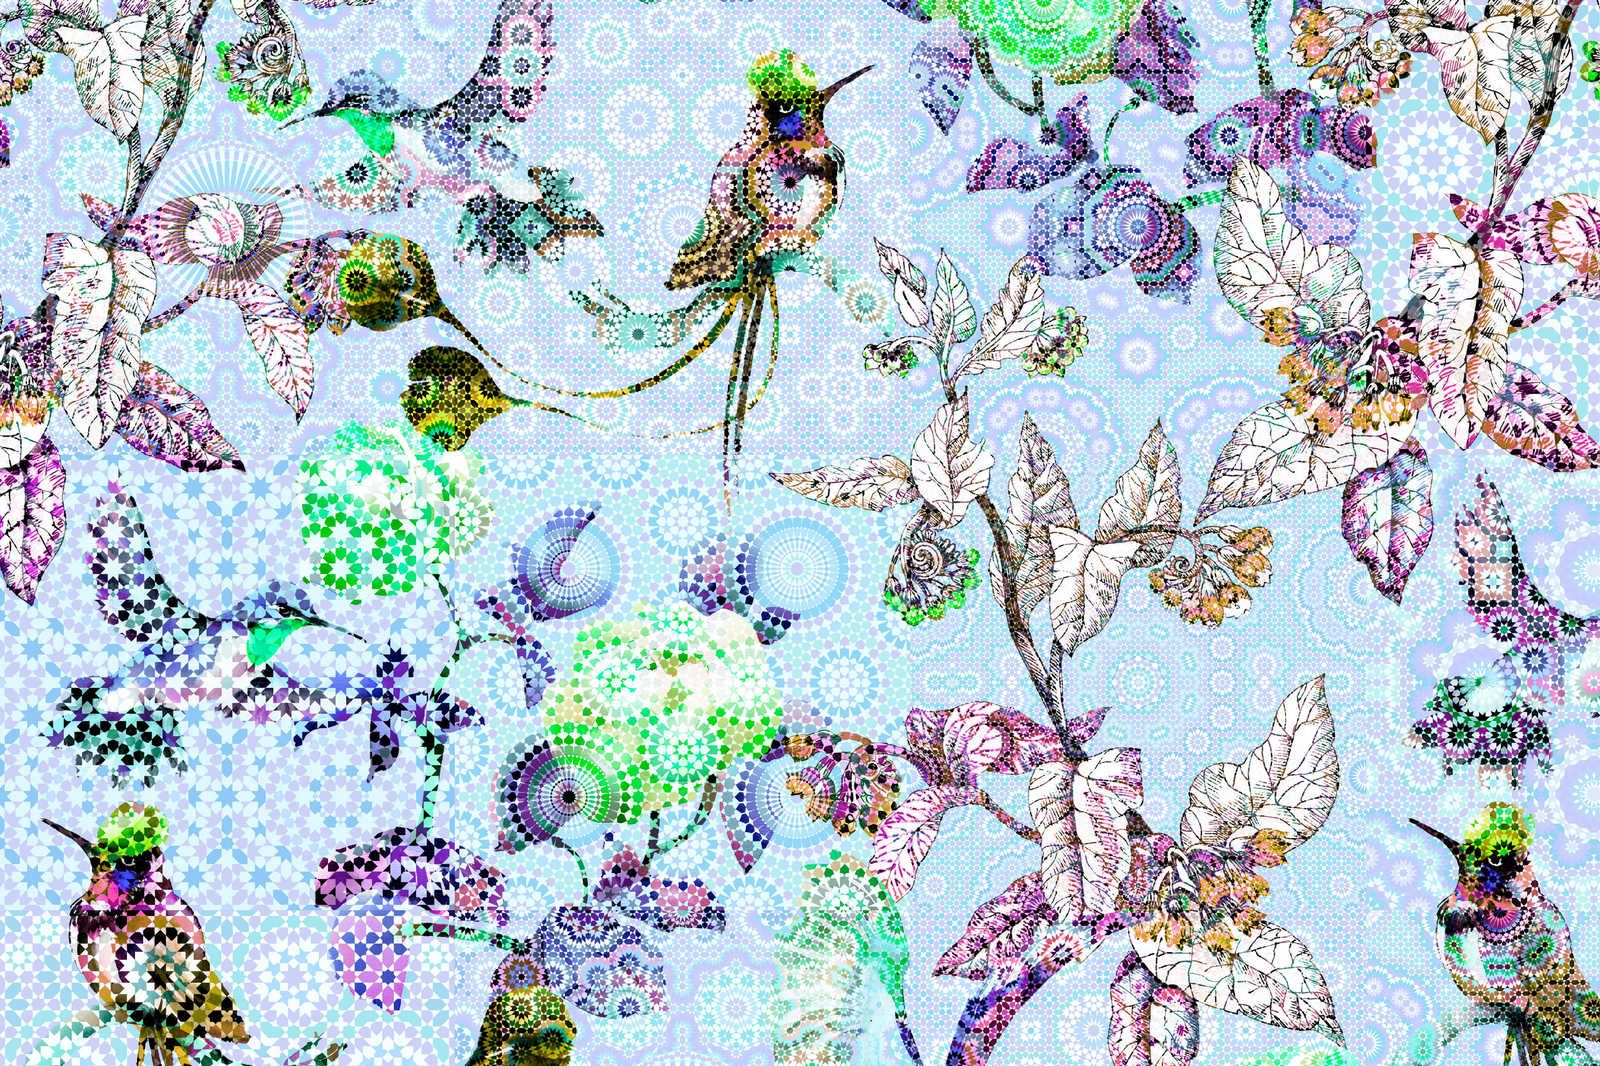             Leinwandbild Blumen & Vögel im Mosaik Stil – 1,20 m x 0,80 m
        